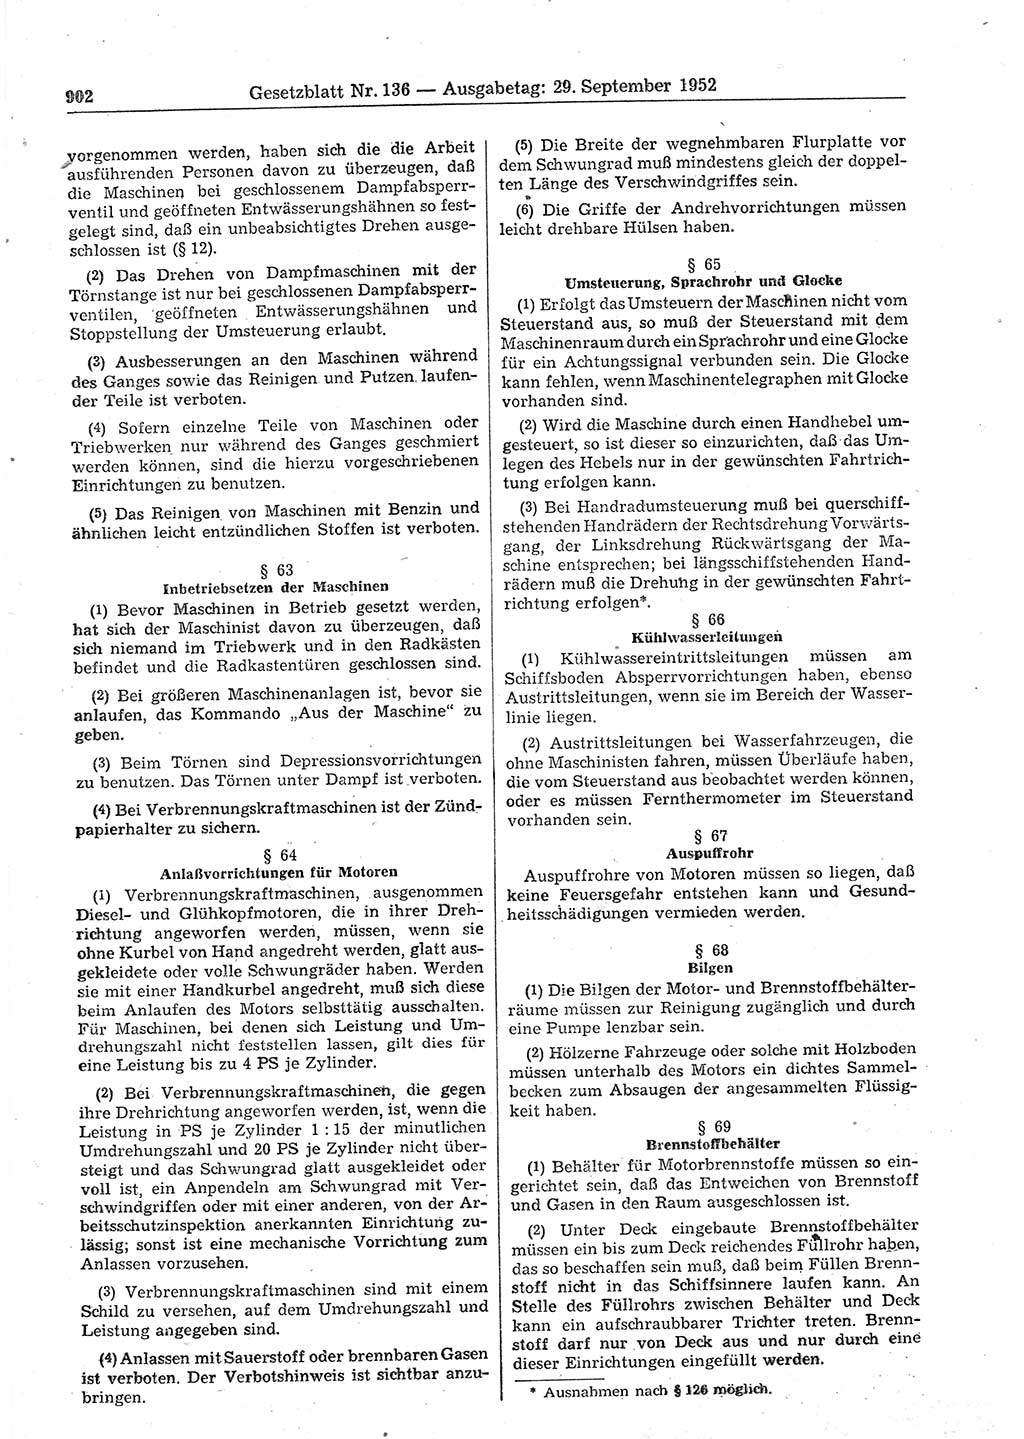 Gesetzblatt (GBl.) der Deutschen Demokratischen Republik (DDR) 1952, Seite 902 (GBl. DDR 1952, S. 902)